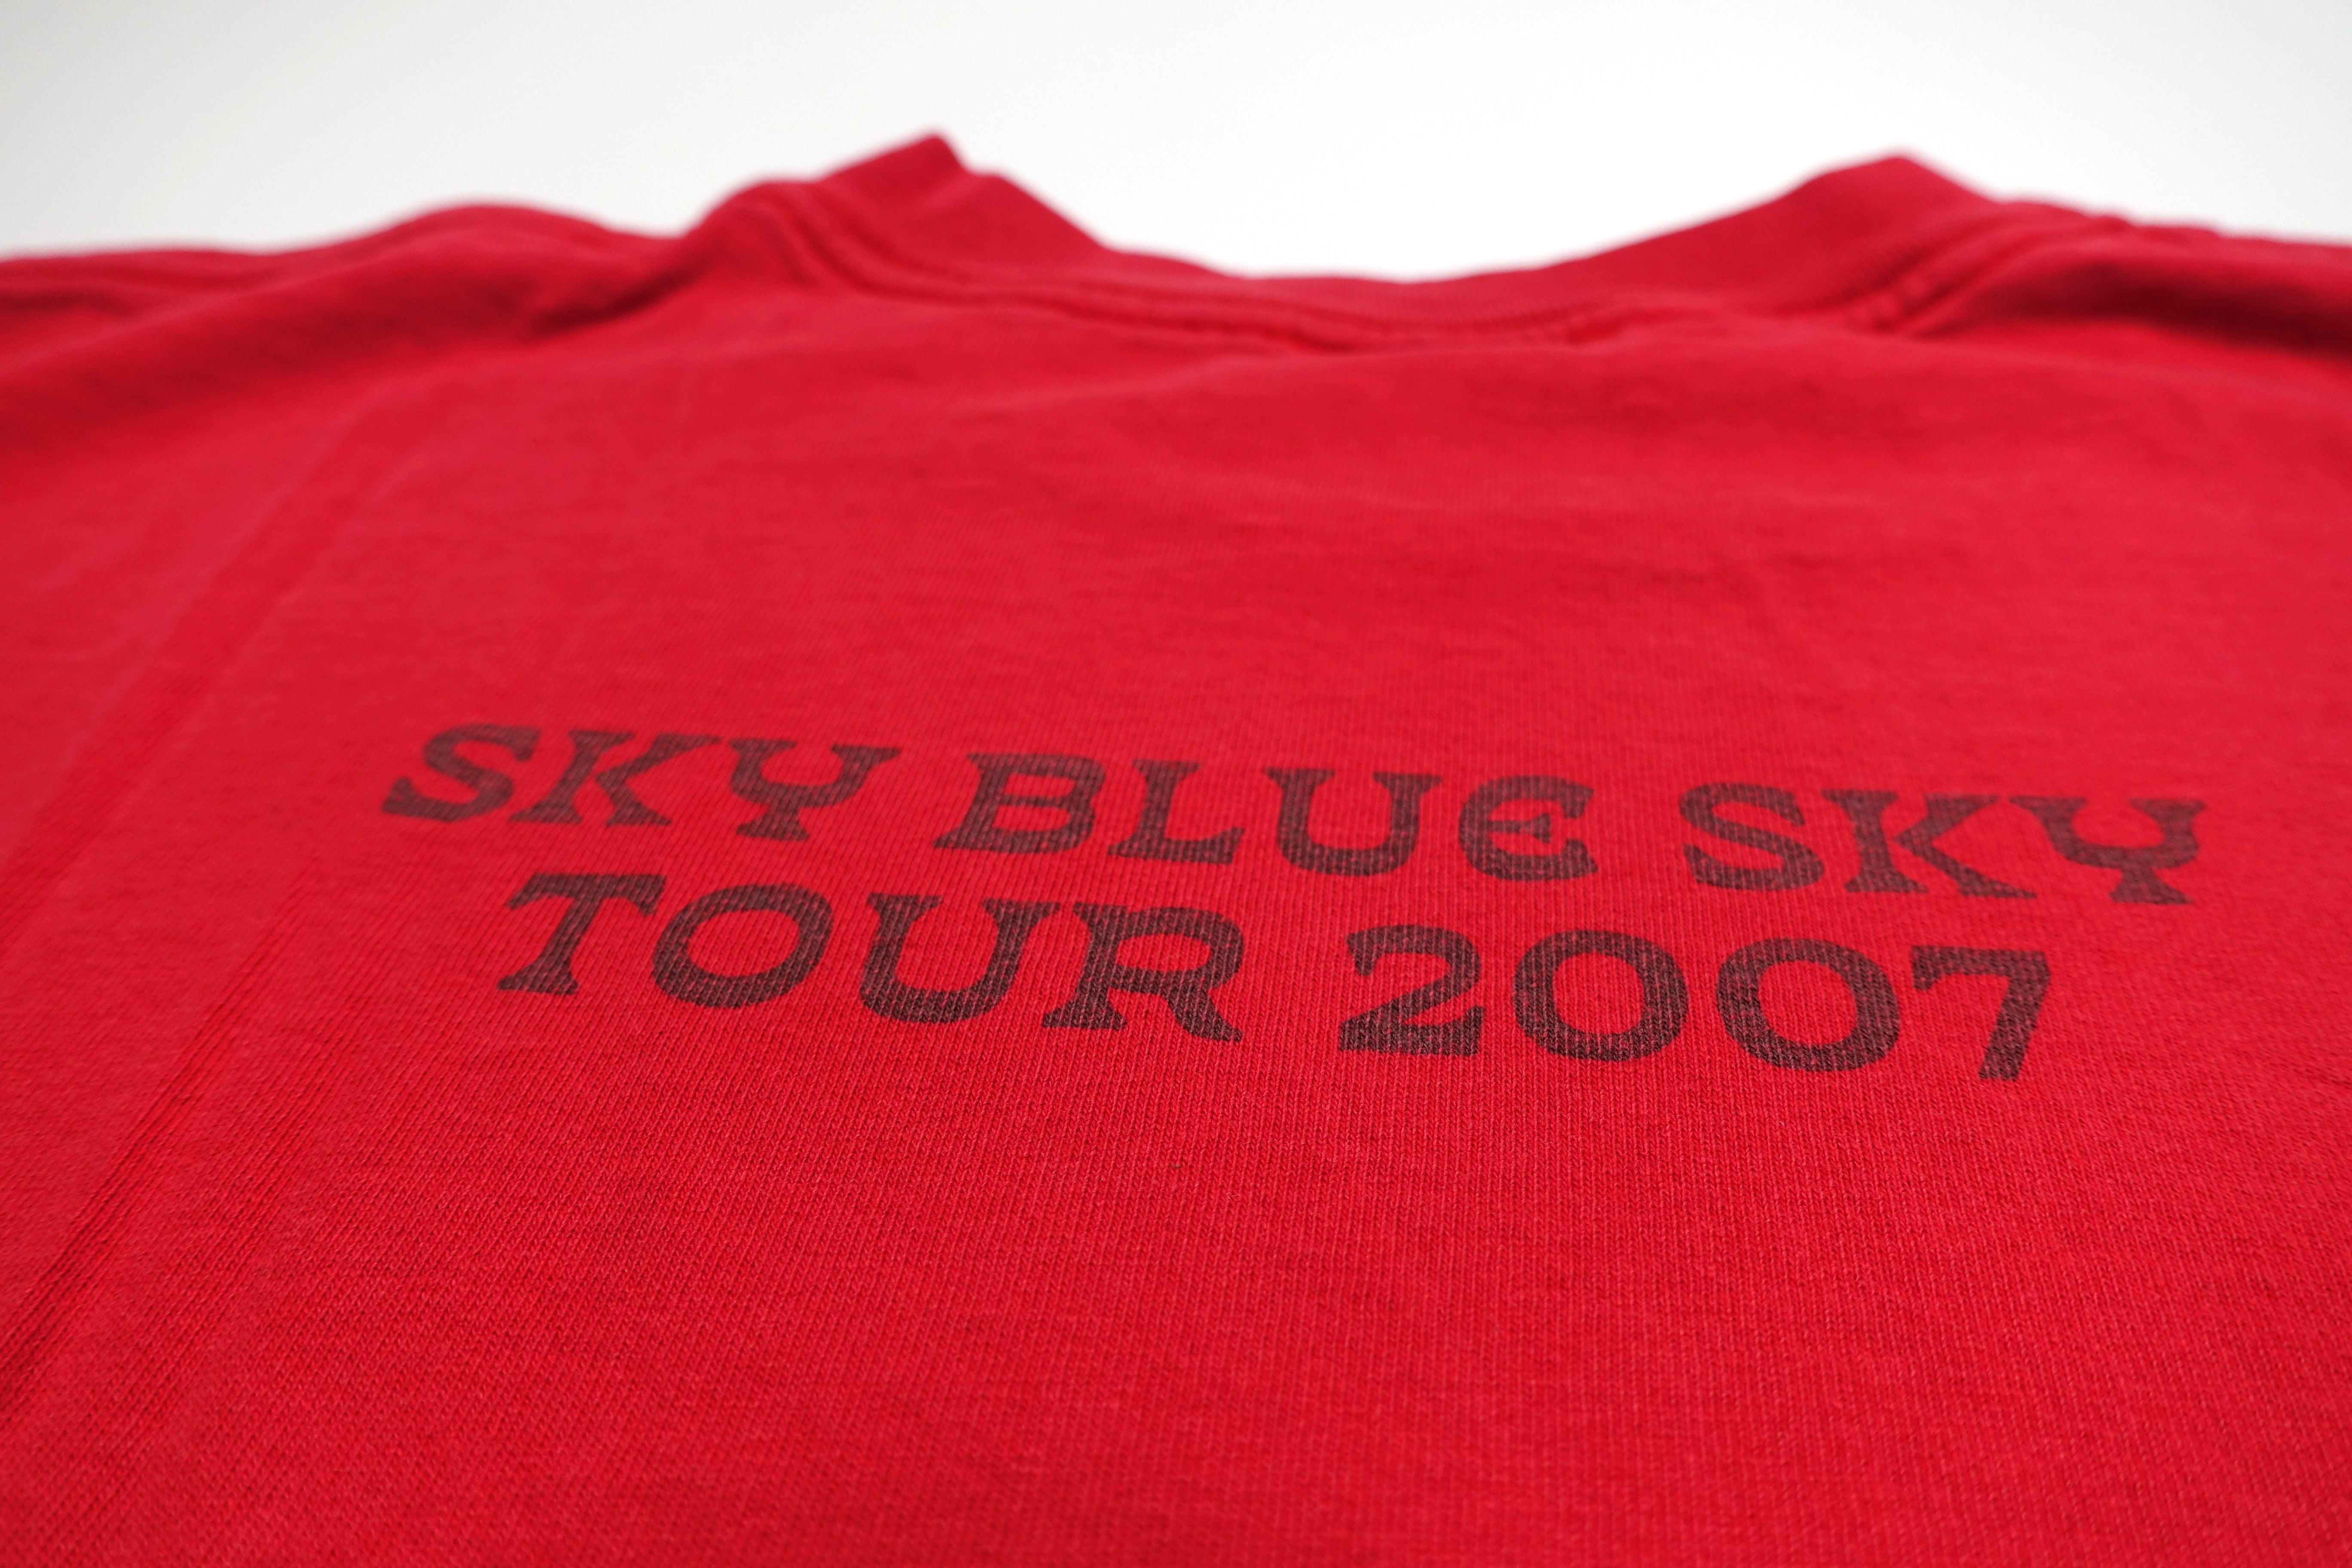 Wilco ‎– Sky Blue Sky 2007 Tour Shirt Size Large